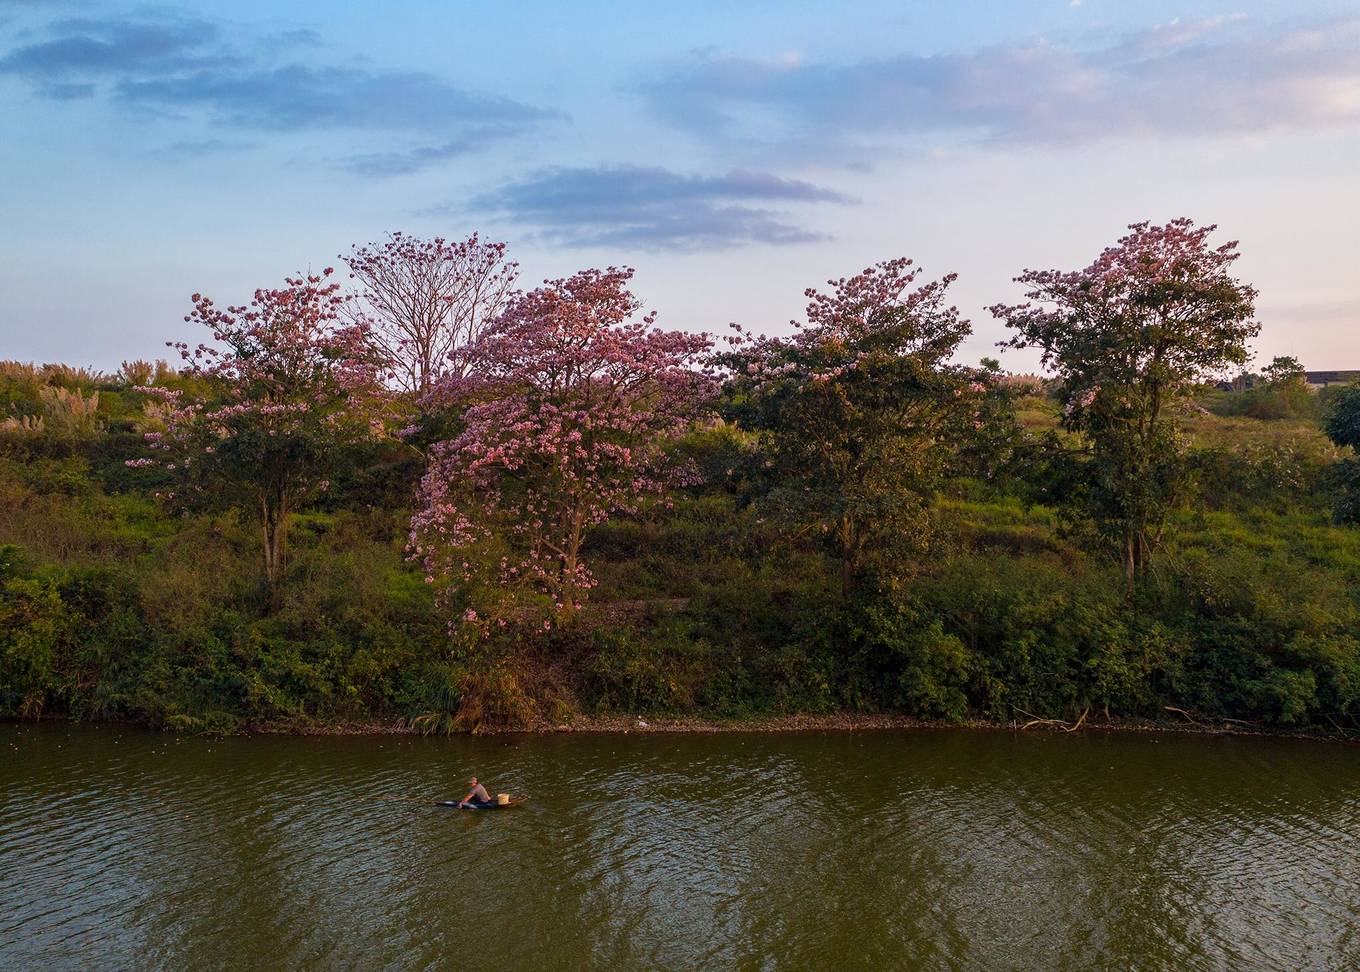 Sau mùa hoa mai anh đào và phượng vàng, thành phố Bảo Lộc đang được tô điểm bởi sắc hoa hồng phấn. Nơi trồng loài cây này nhiều nhất nằm ở khu vực bờ đông của hồ Nam Phương.